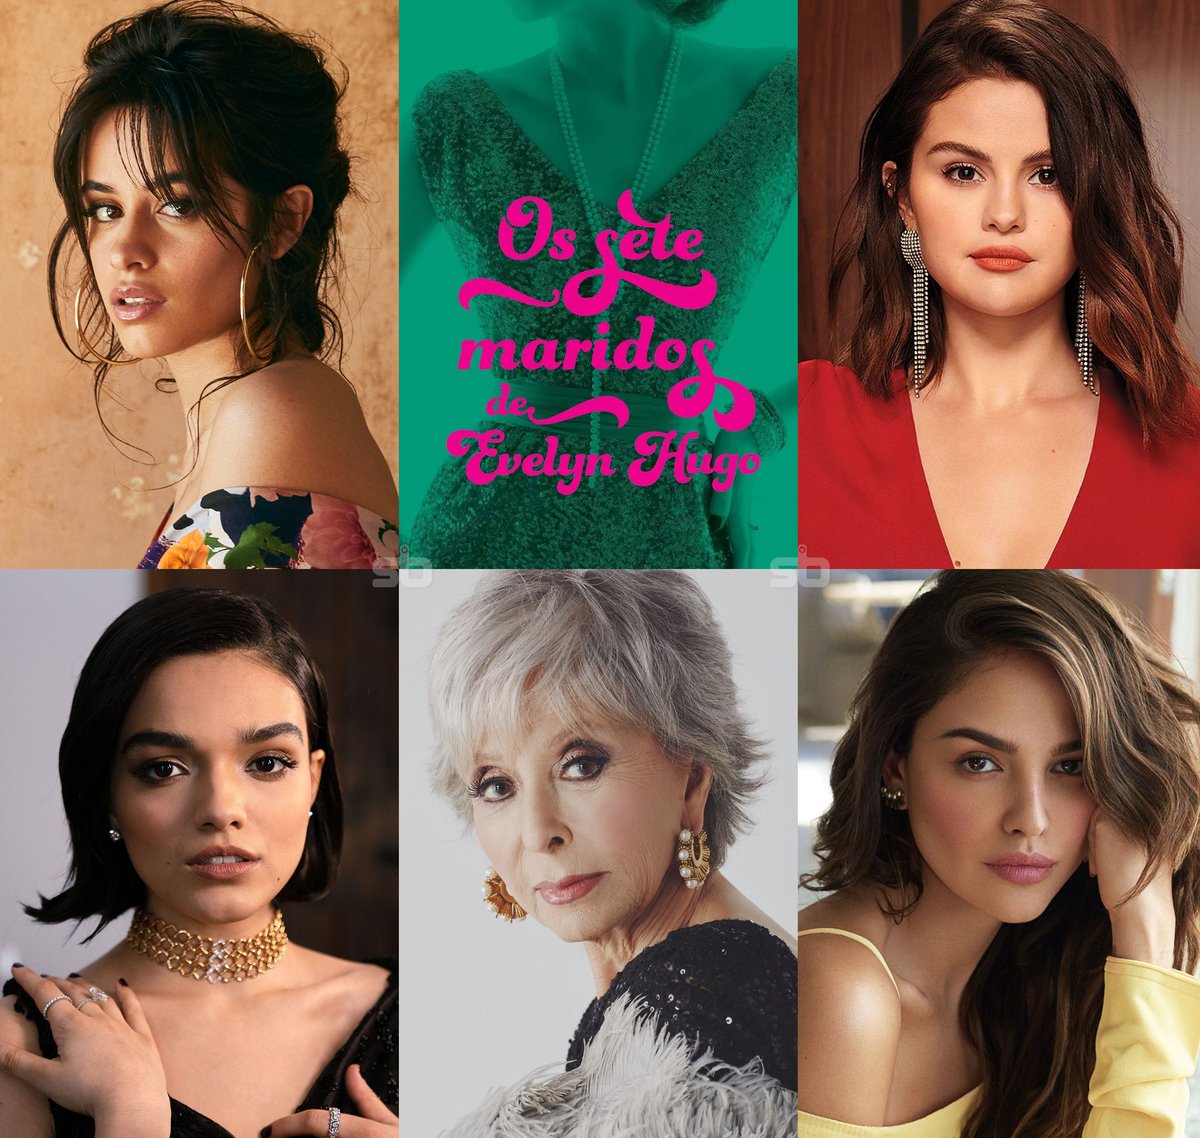 EITA! Camila Cabello, Selena Gomez, Rachel Zegler, Rita Moreno e Eiza Gonzalez receberam o script de “Os Sete Maridos de Evelyn Hugo” para audição do papel principal, afirma insider.